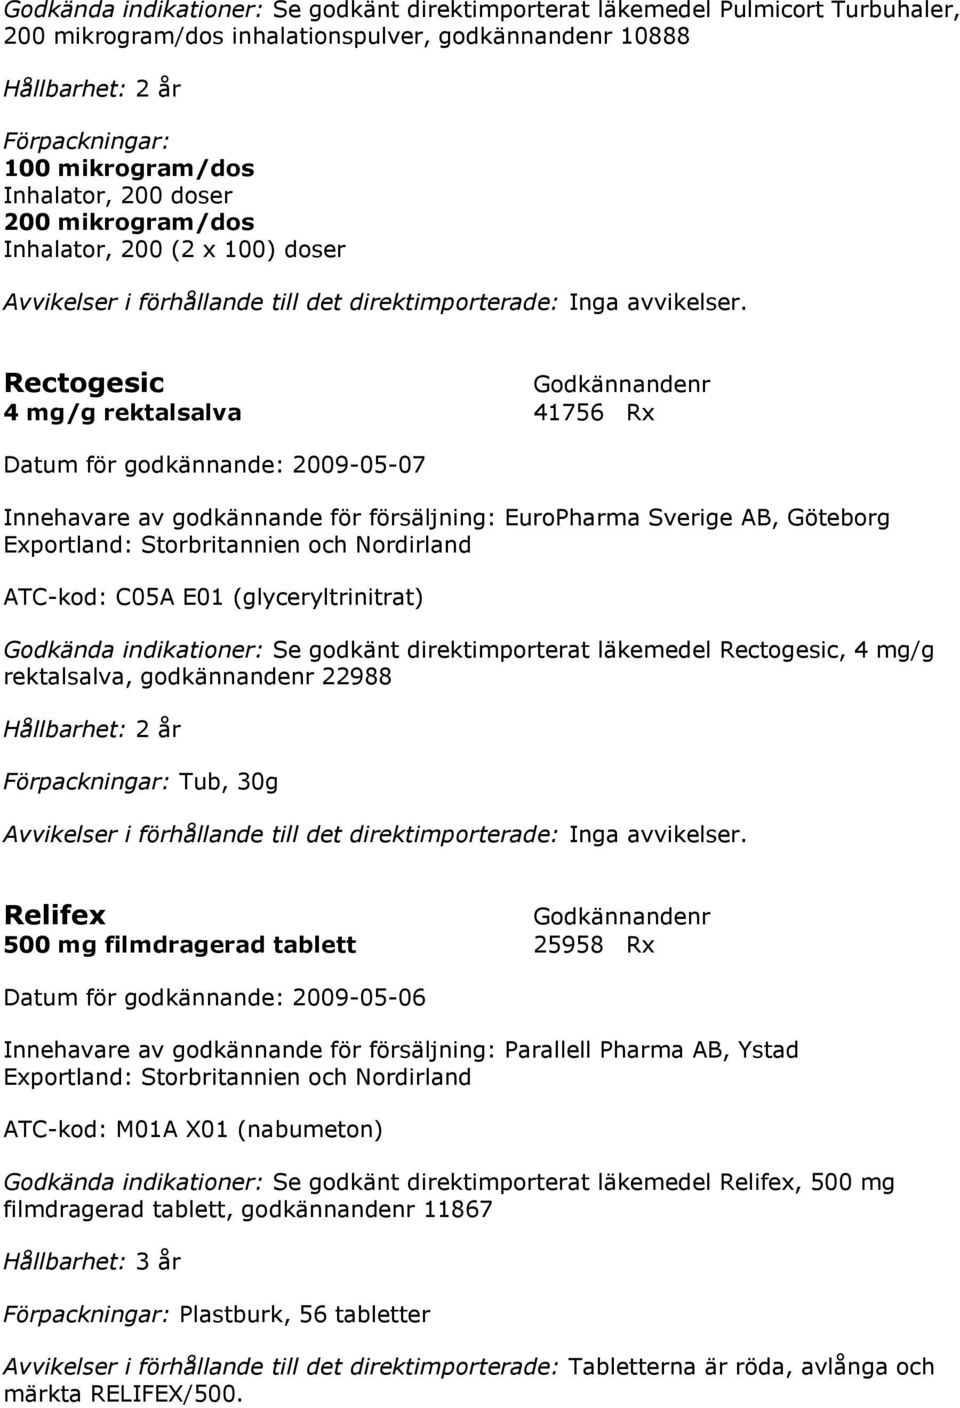 Rectogesic 4 mg/g rektalsalva 41756 Rx Datum för godkännande: 2009-05-07 Innehavare av godkännande för försäljning: EuroPharma Sverige AB, Göteborg Exportland: Storbritannien och Nordirland ATC-kod: